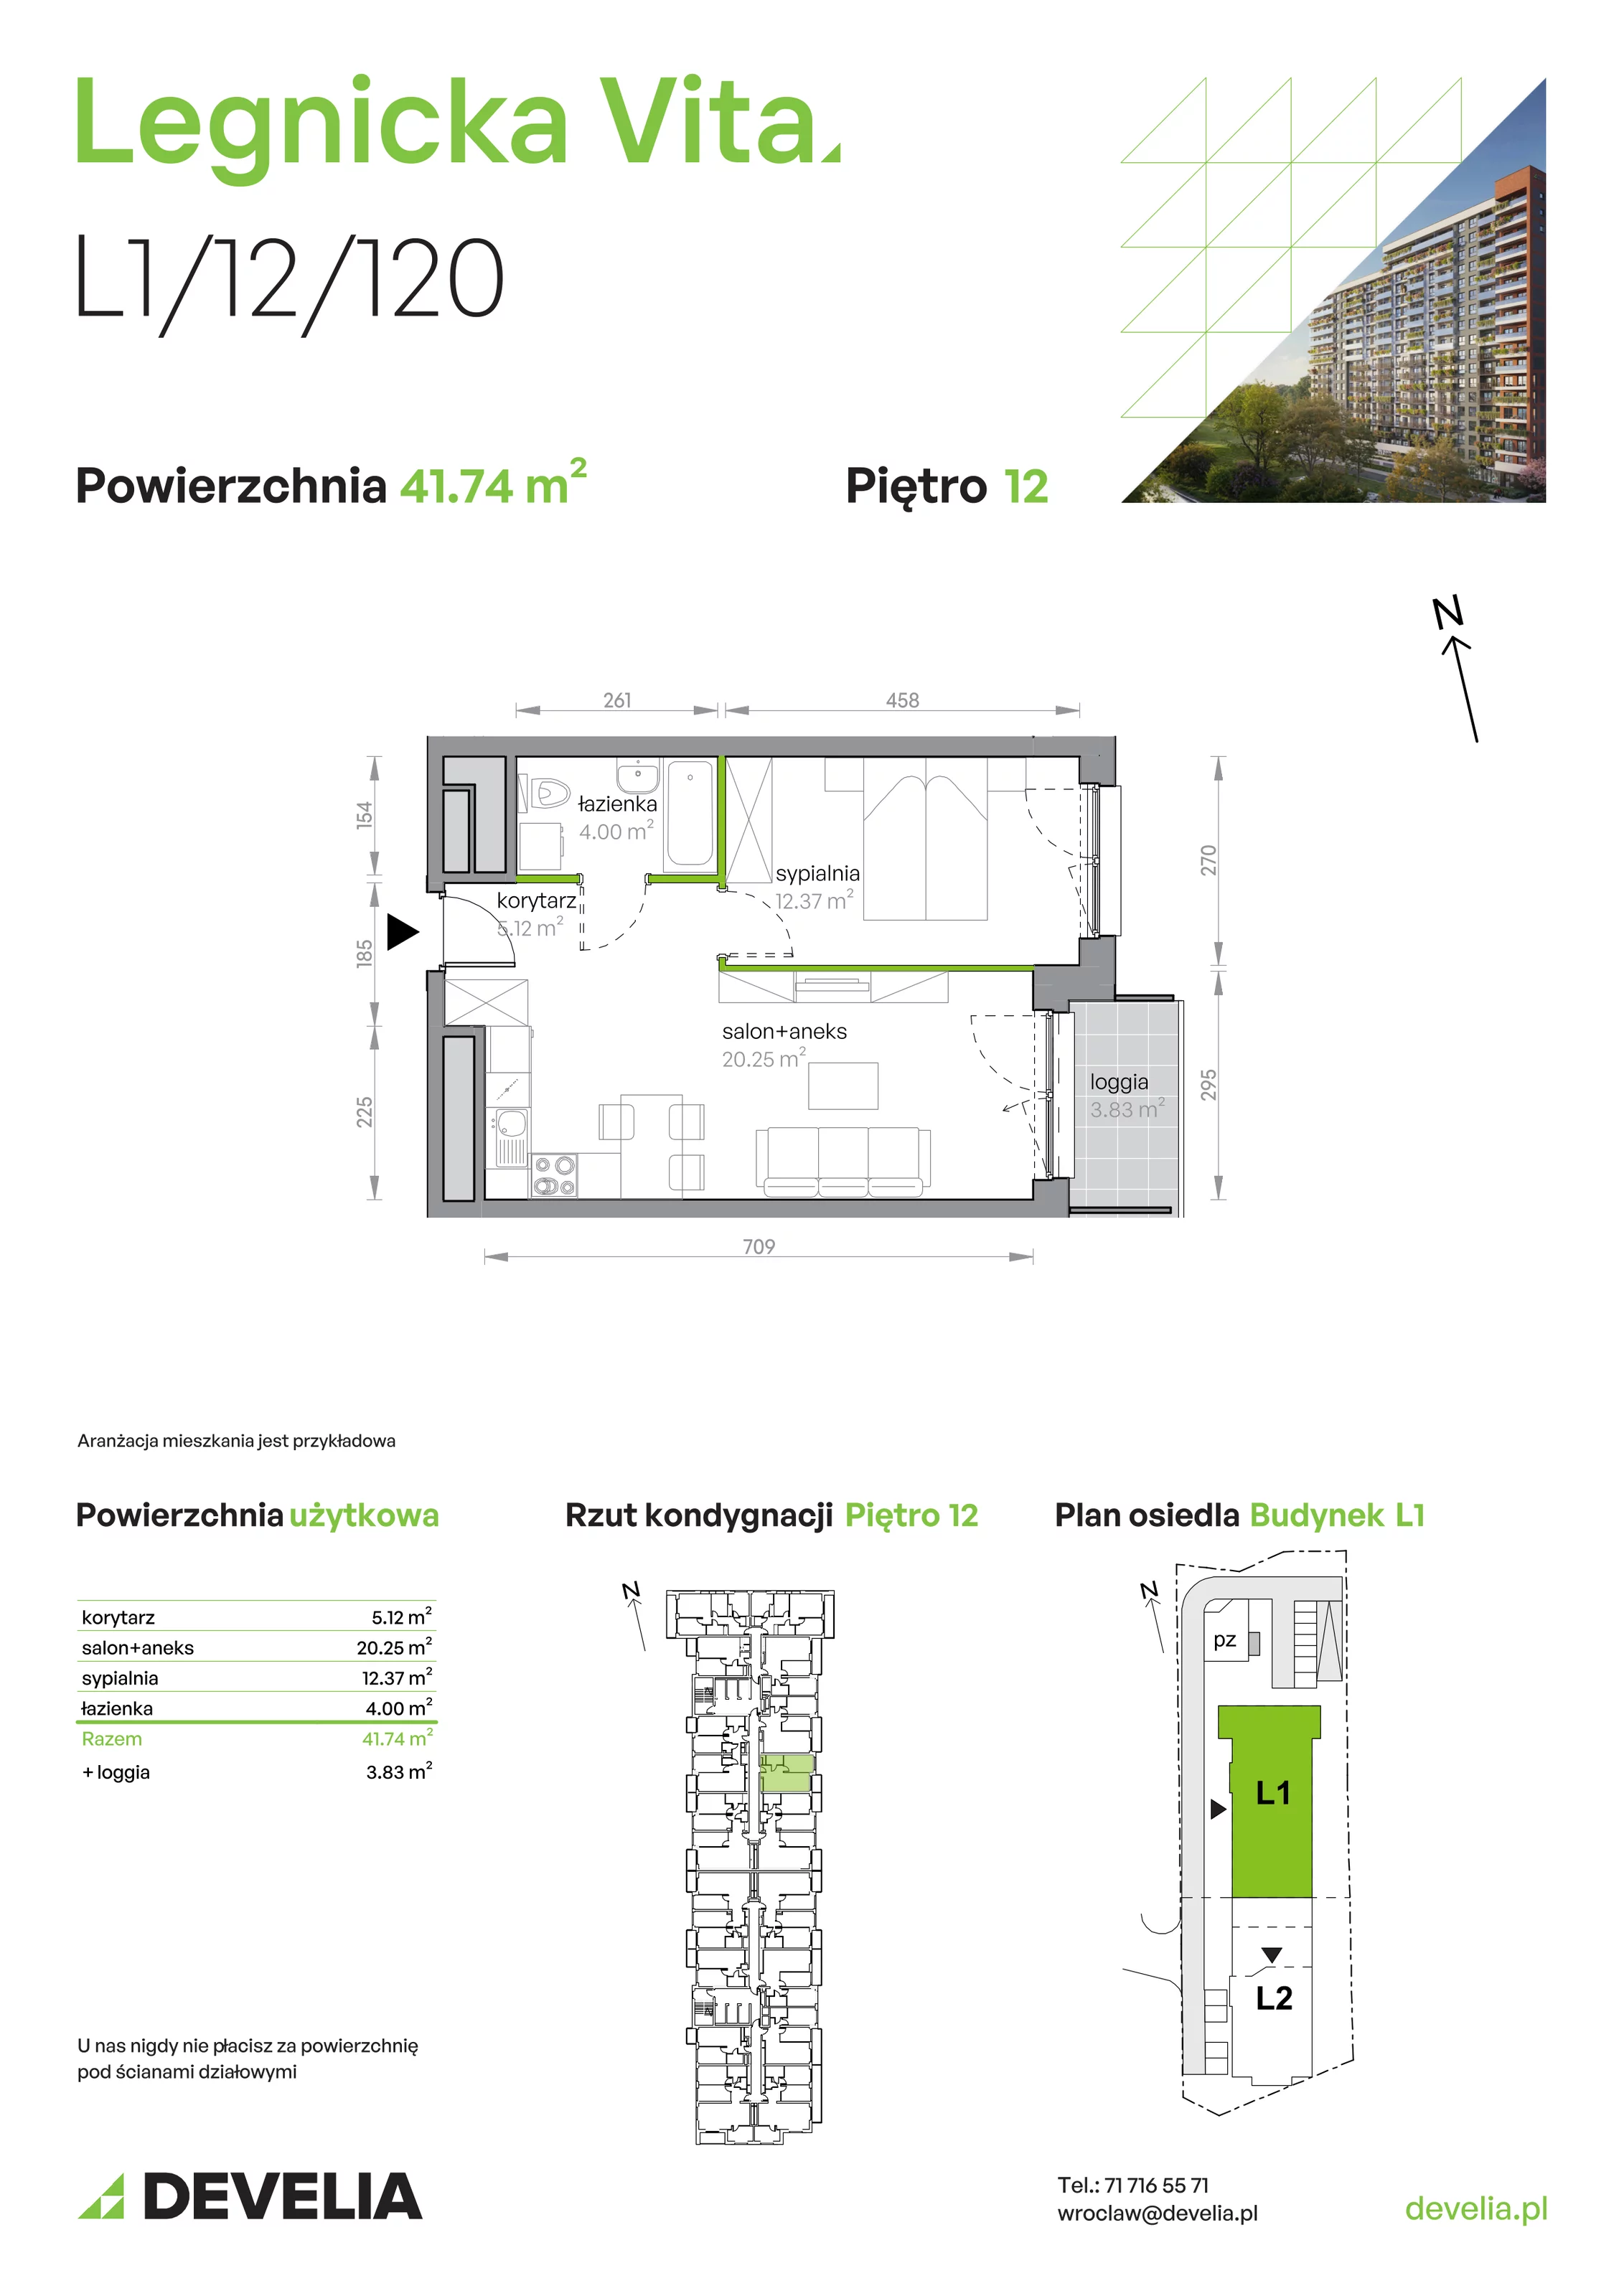 Mieszkanie 41,74 m², piętro 12, oferta nr L1/12/120, Legnicka Vita, Wrocław, Gądów-Popowice Południowe, Popowice, ul. Legnicka 52 A